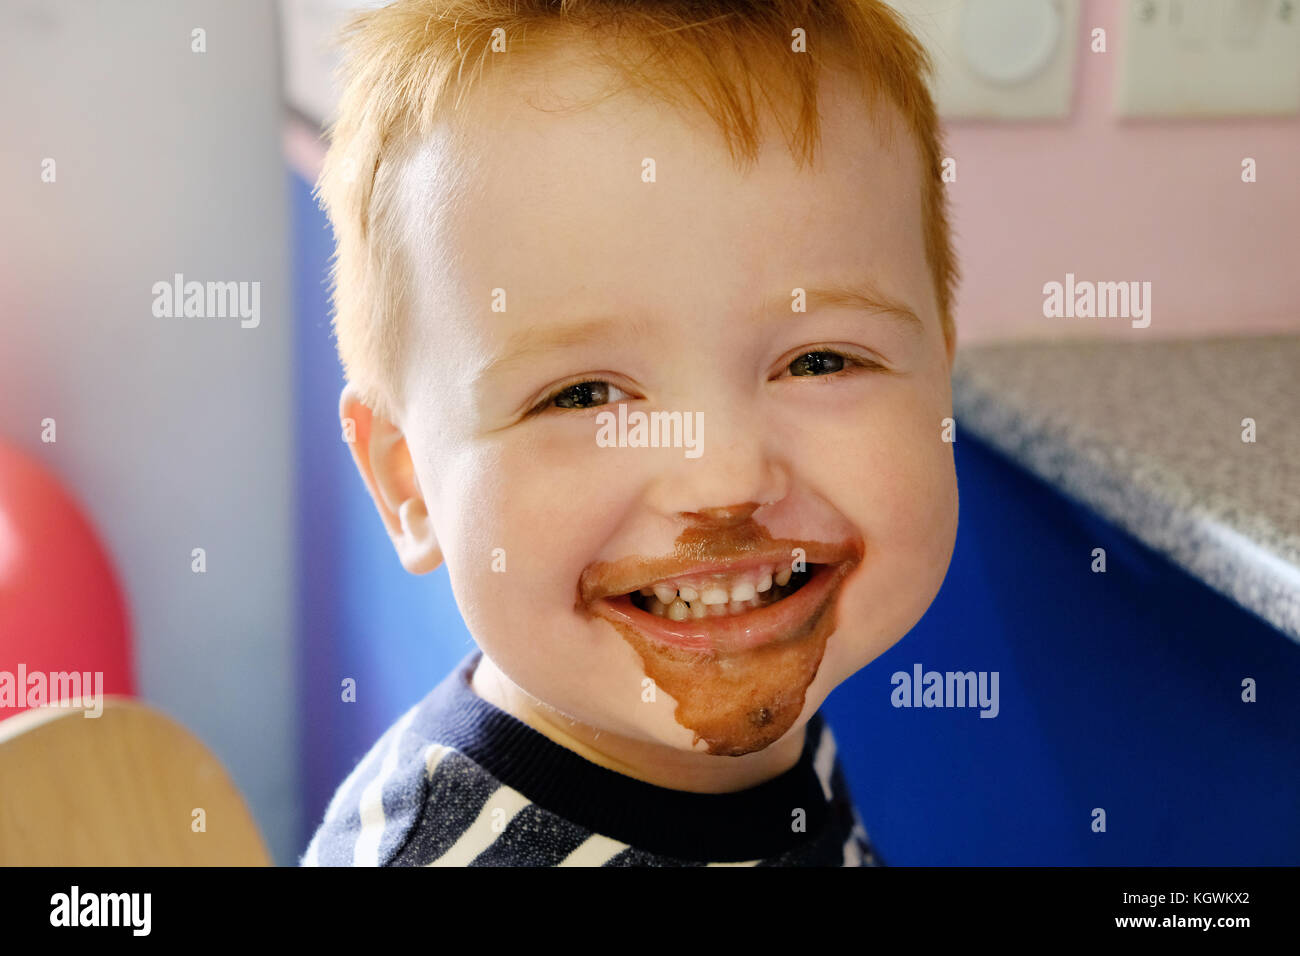 Un giovane ragazzo felice, sorridente largamente, il suo volto ricoperto di gelato al cioccolato avente appena mangiato e un gelato al cioccolato trattare Foto Stock